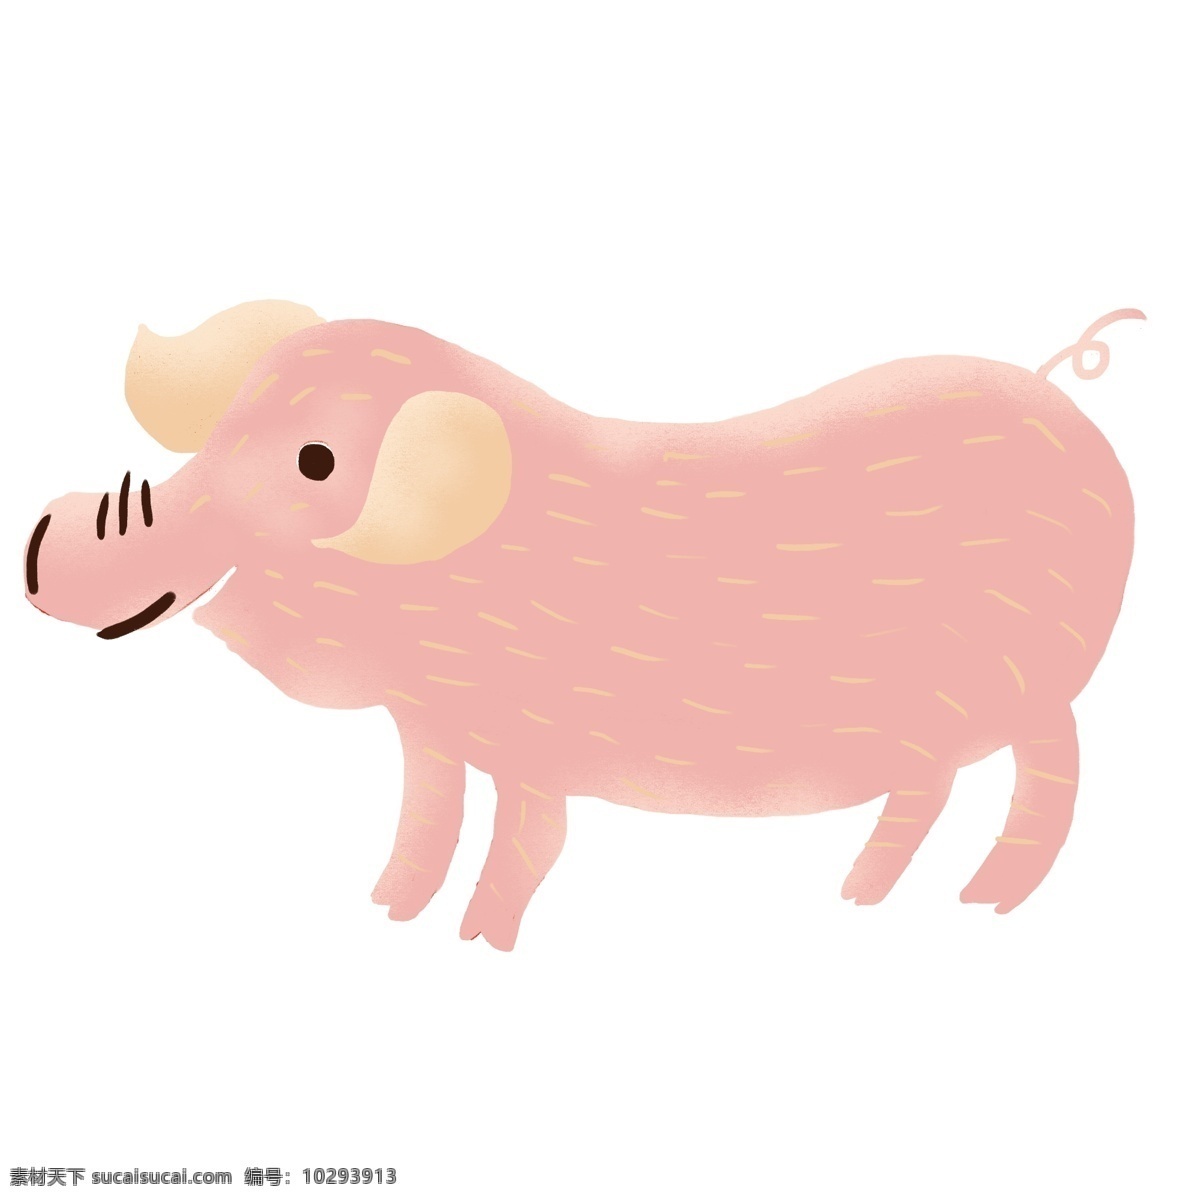 卡通 手绘 猪年 猪 元素 商用 手绘猪 动物 卡通可爱风